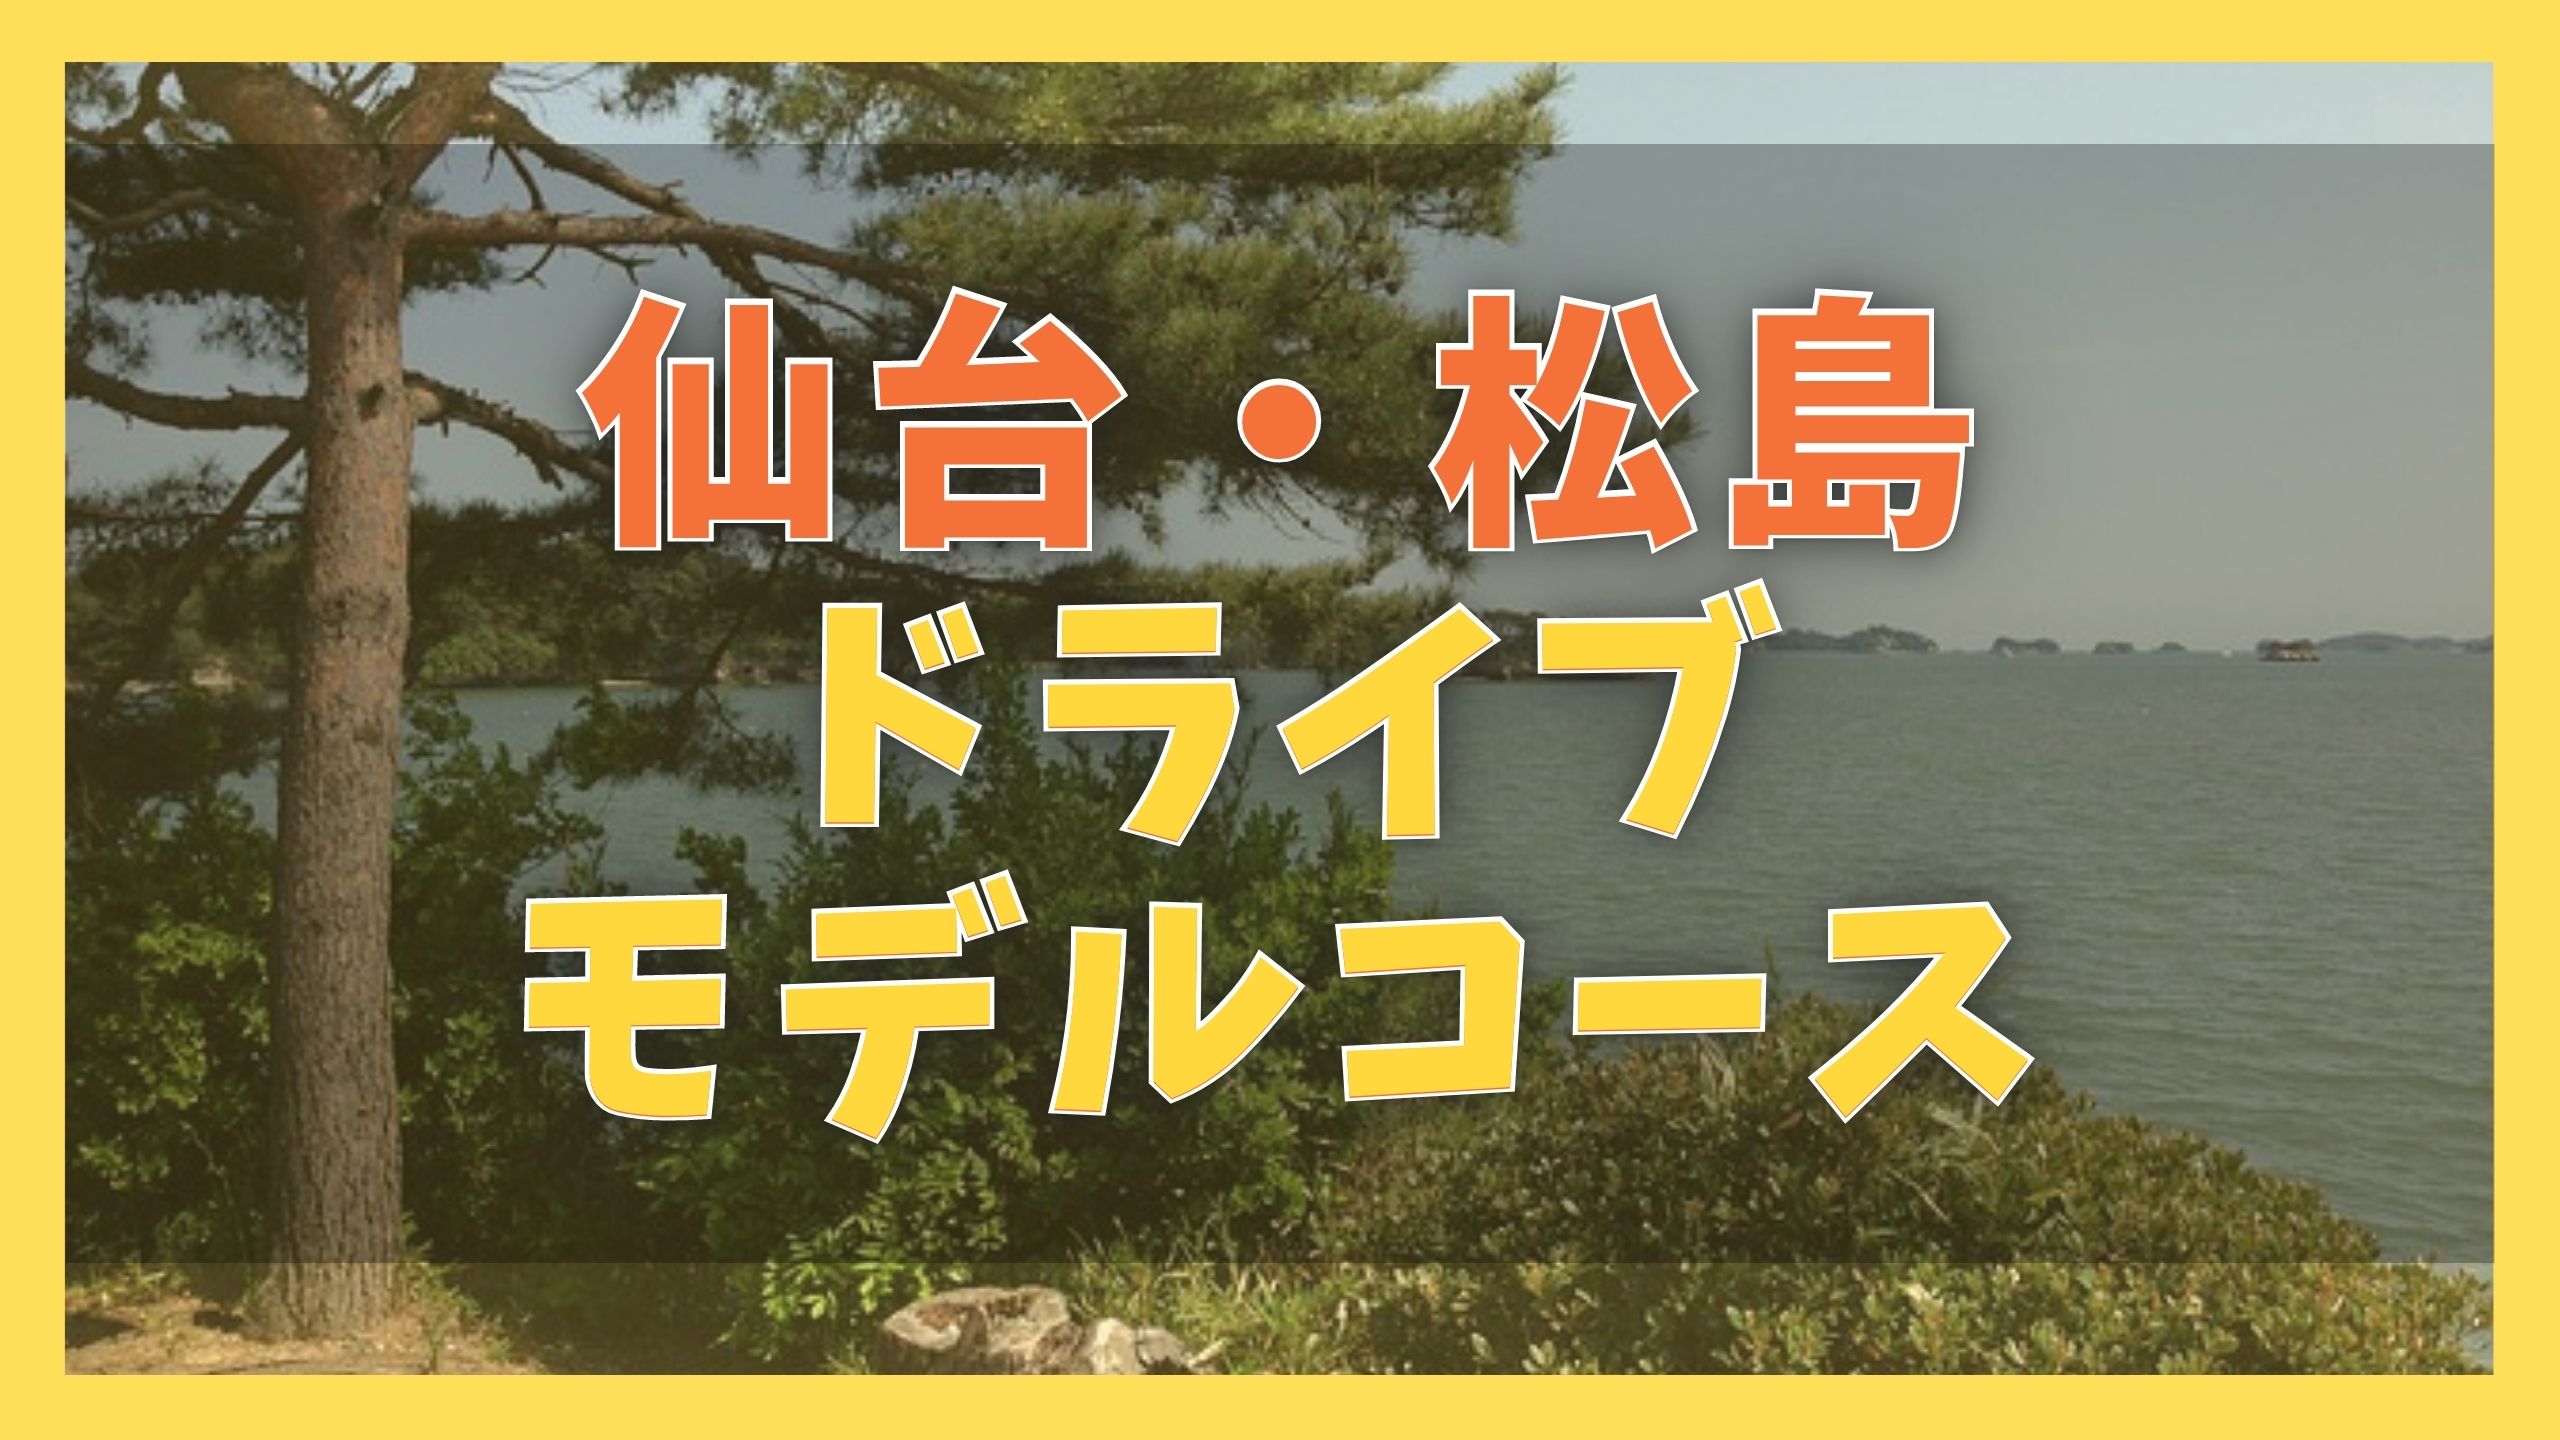 仙台 松島観光モデルコース 2泊3日で巡る10の観光名所 ジャパンワンダラー